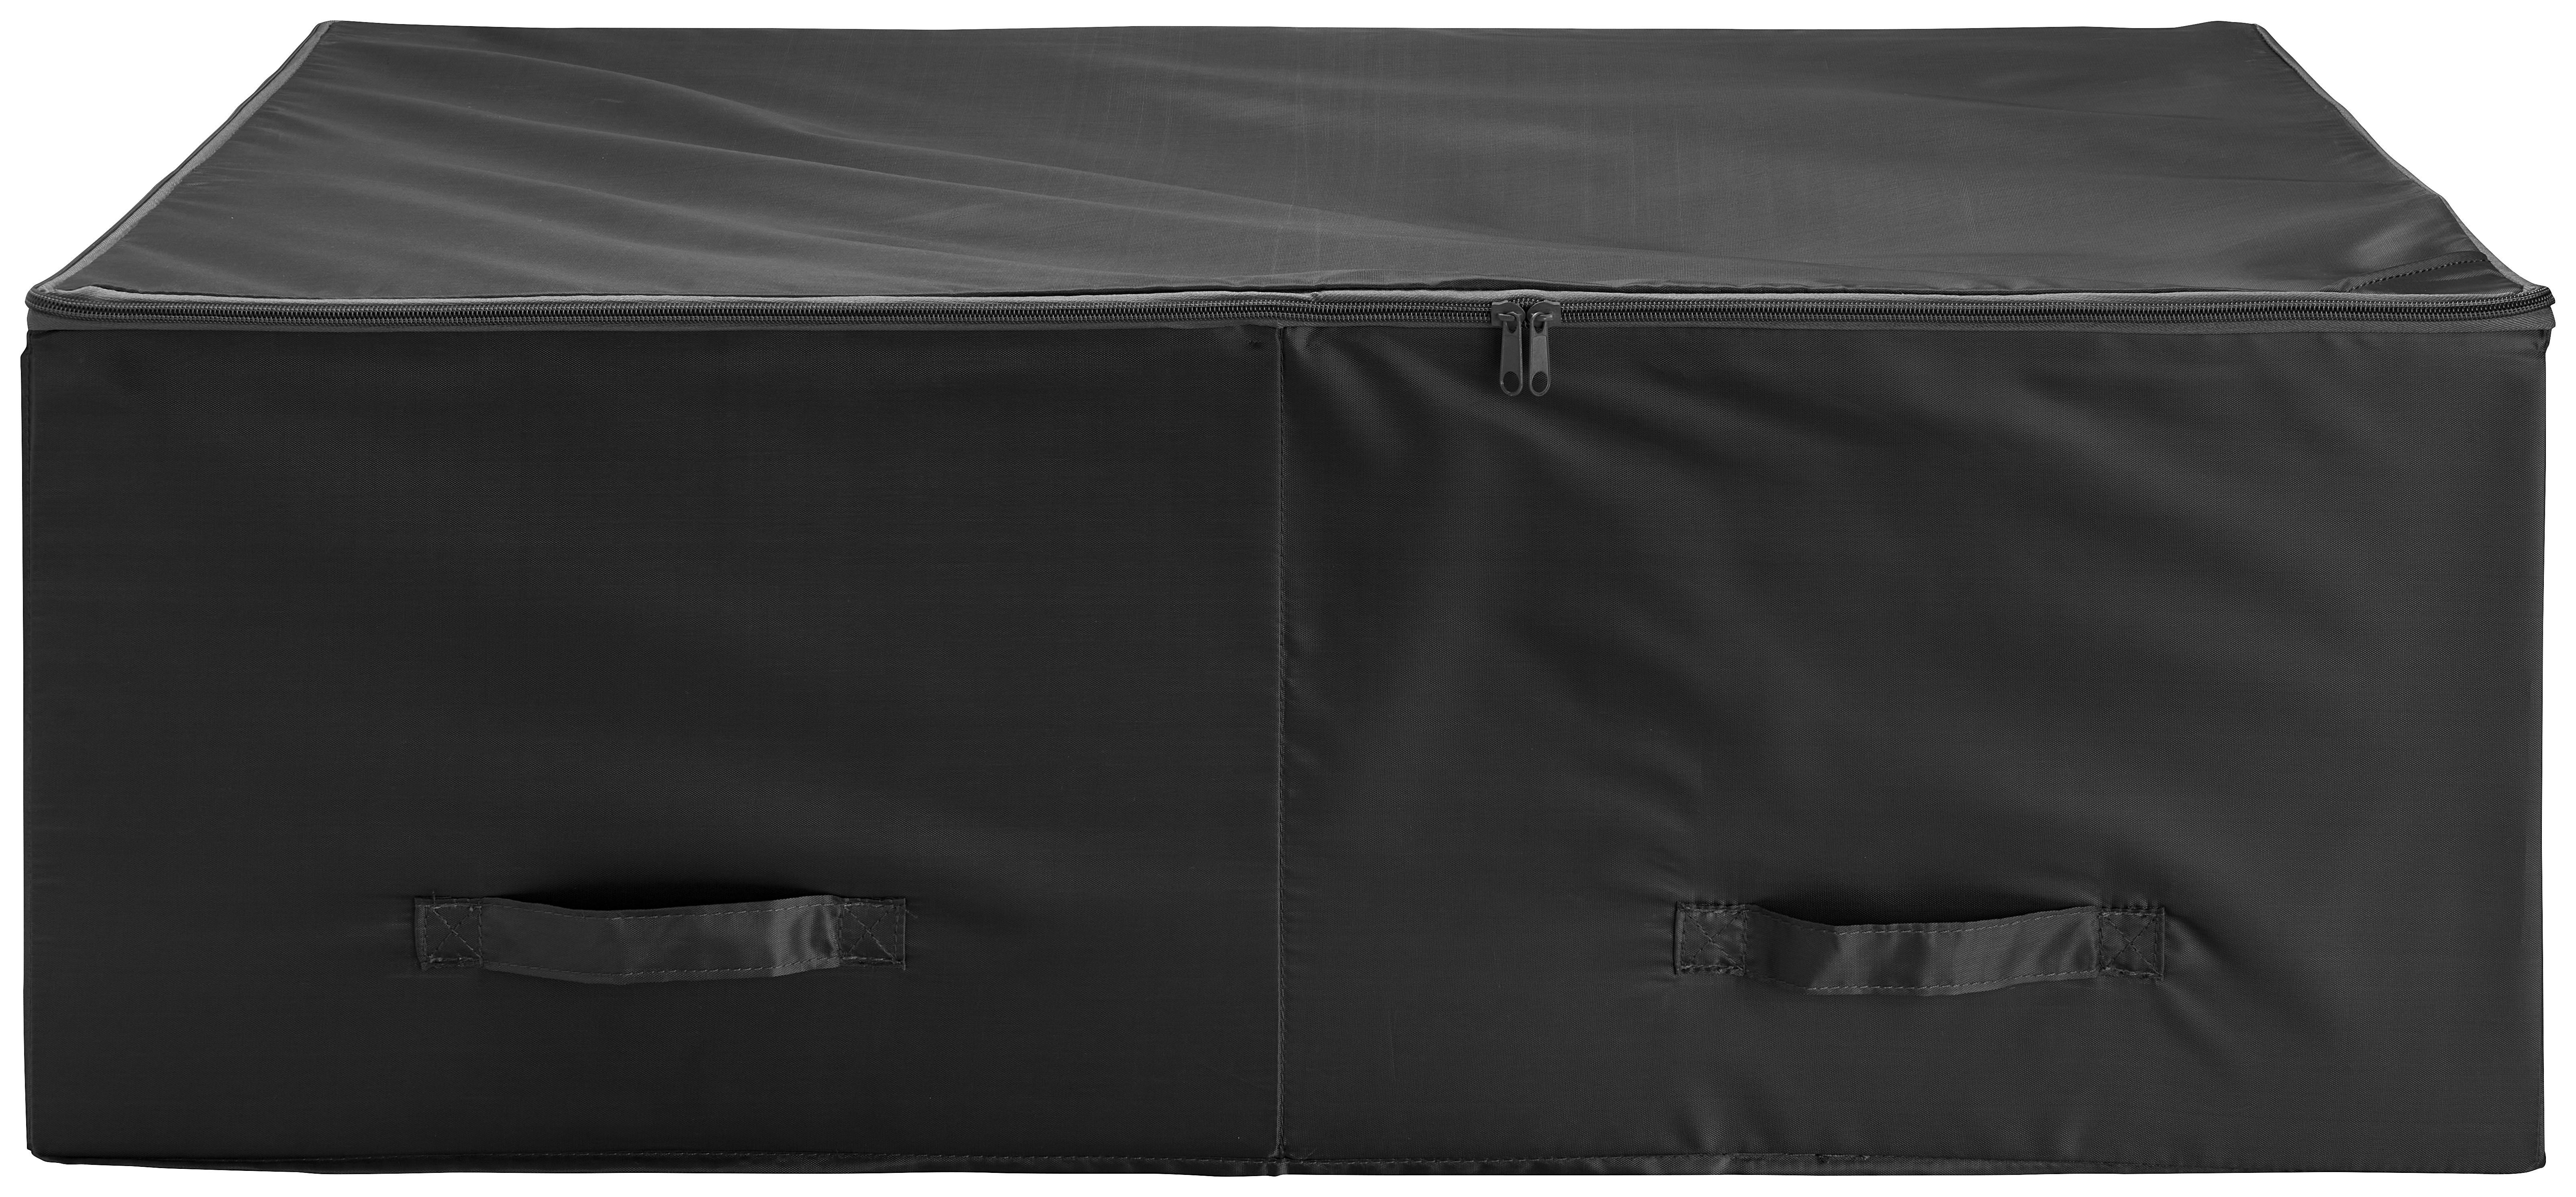 Aufbewahrungstasche Unit in Grau - Grau, Konventionell, Kunststoff/Textil (88/55/28cm) - Modern Living